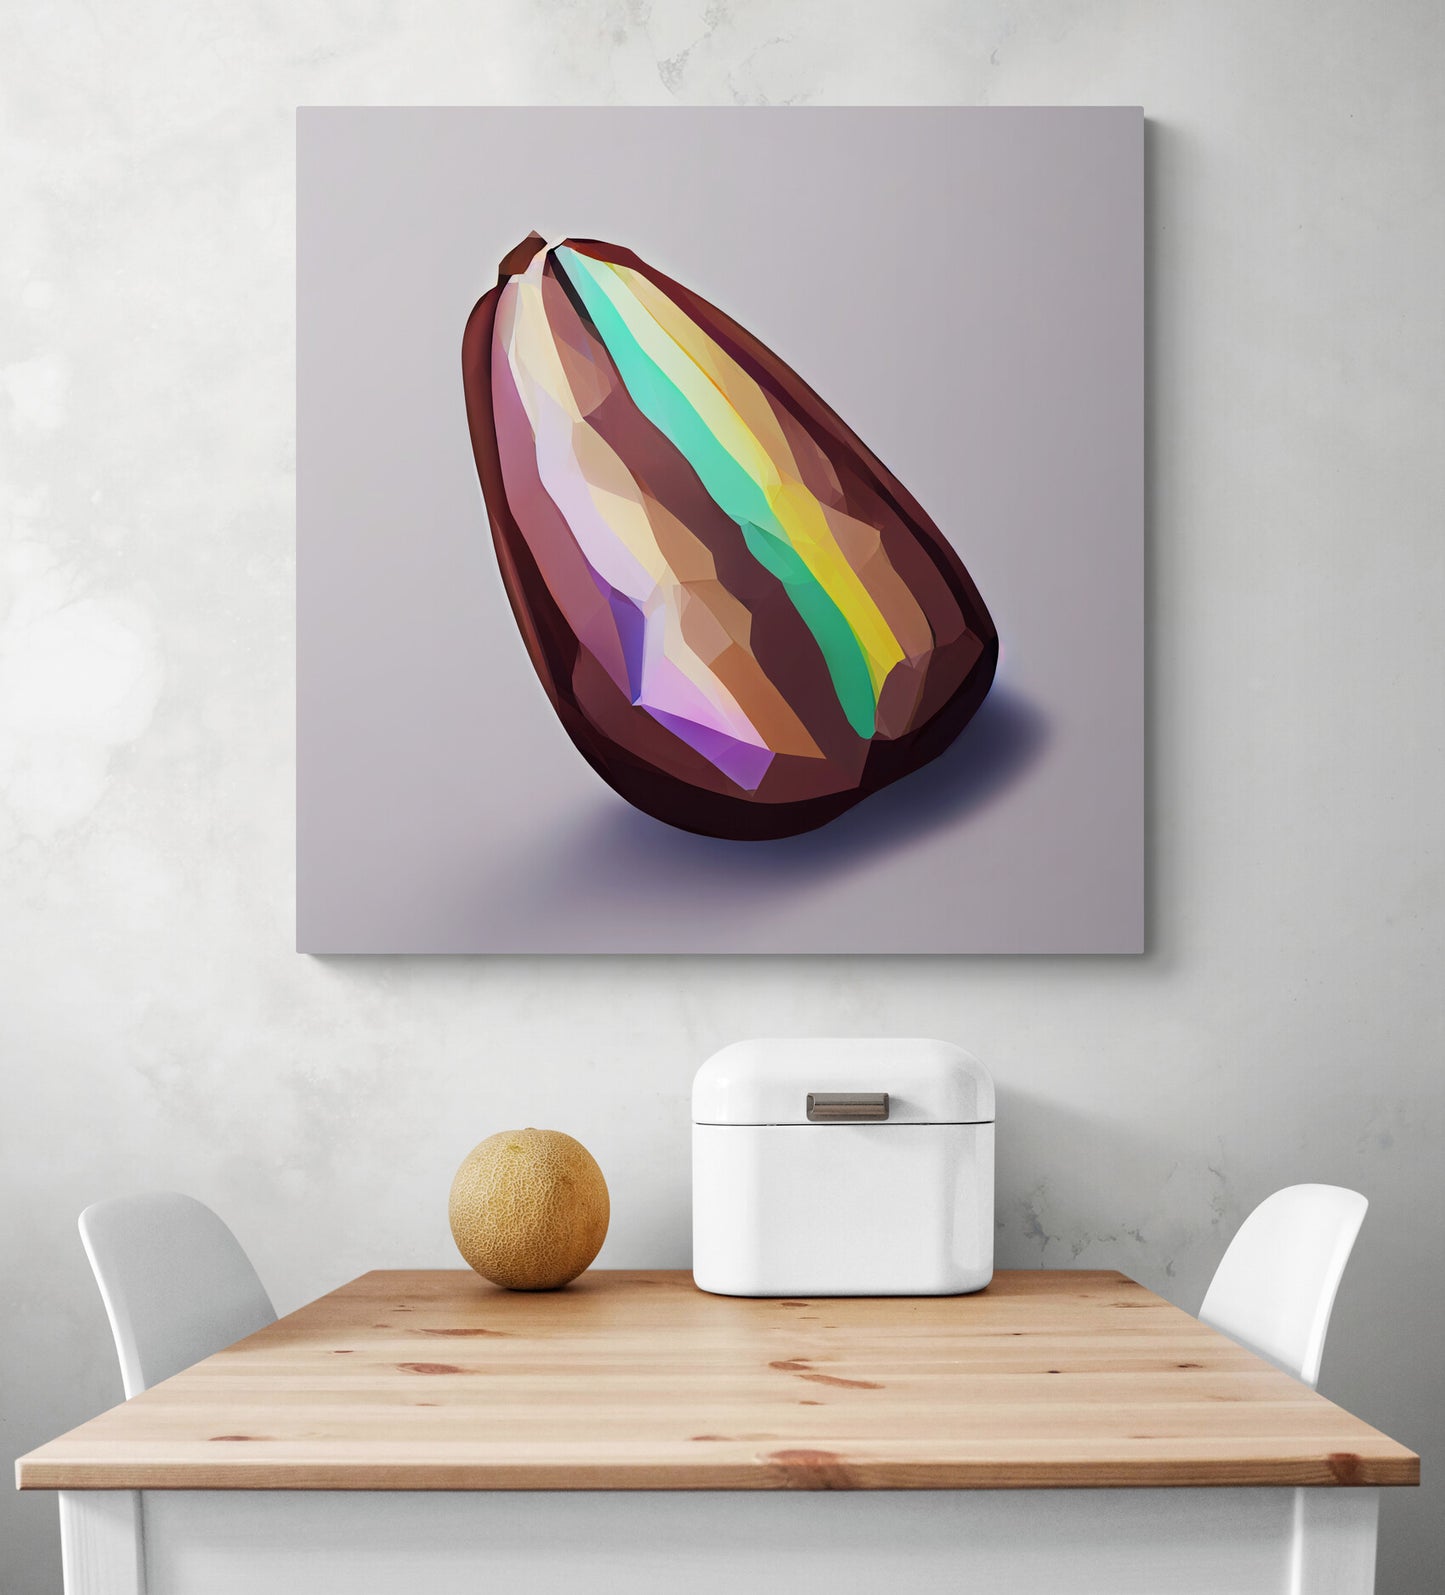 Grand tableaux modernes, dans une cuisine, d'une fève de cacao fusionnée avec un diamant dans un style minimaliste et low-poly, avec des couleurs brillantes, celle de l'arc-en-ciel, qui donne une touche de gaieté, de fraîcheur et de design